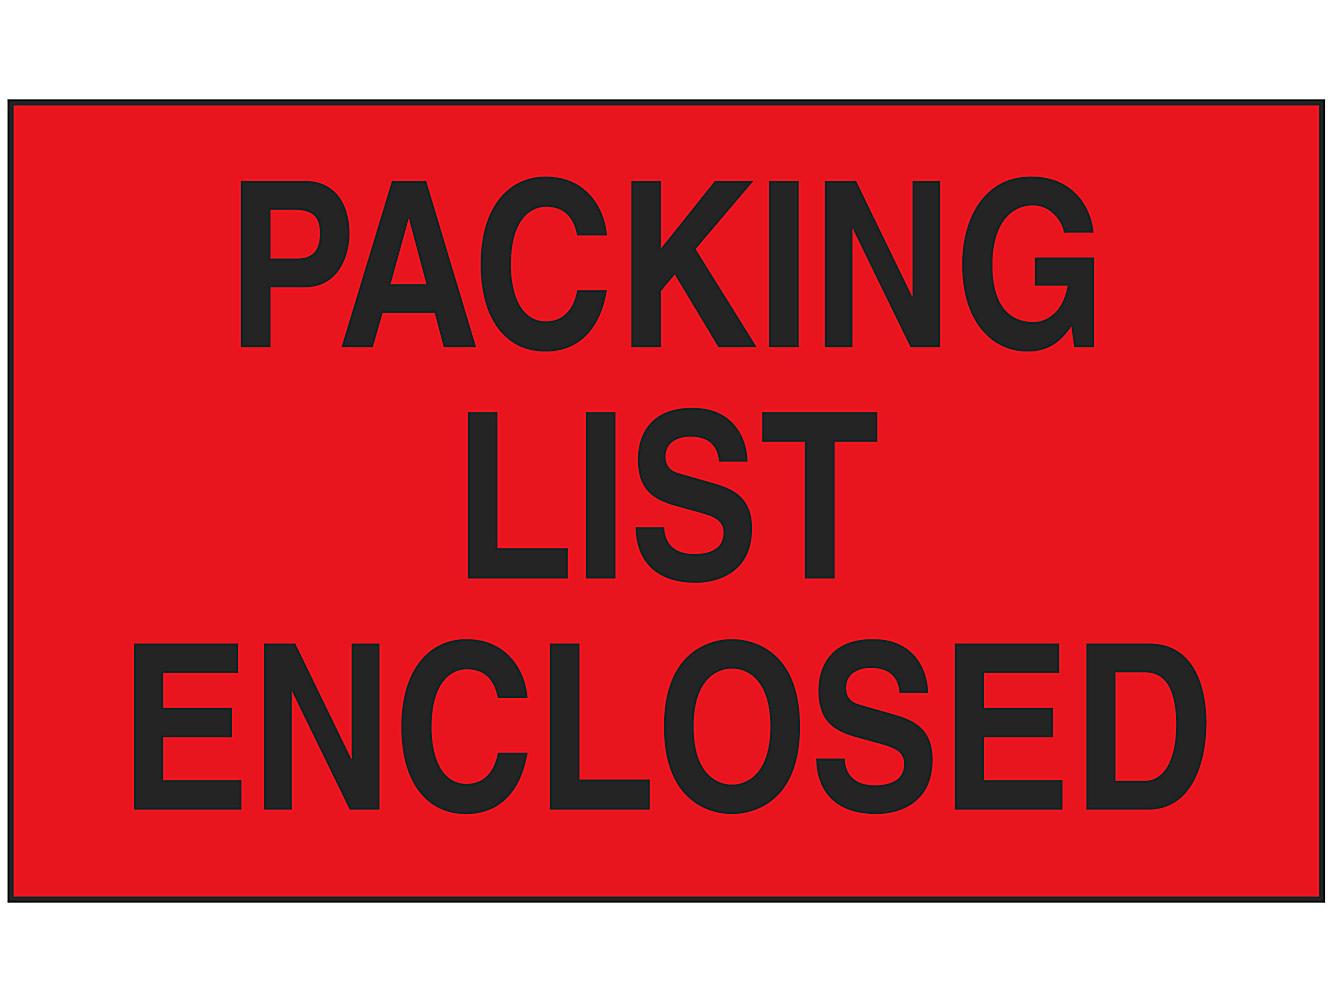 Labels list. Enclosed. Packing list Label. Enclose.